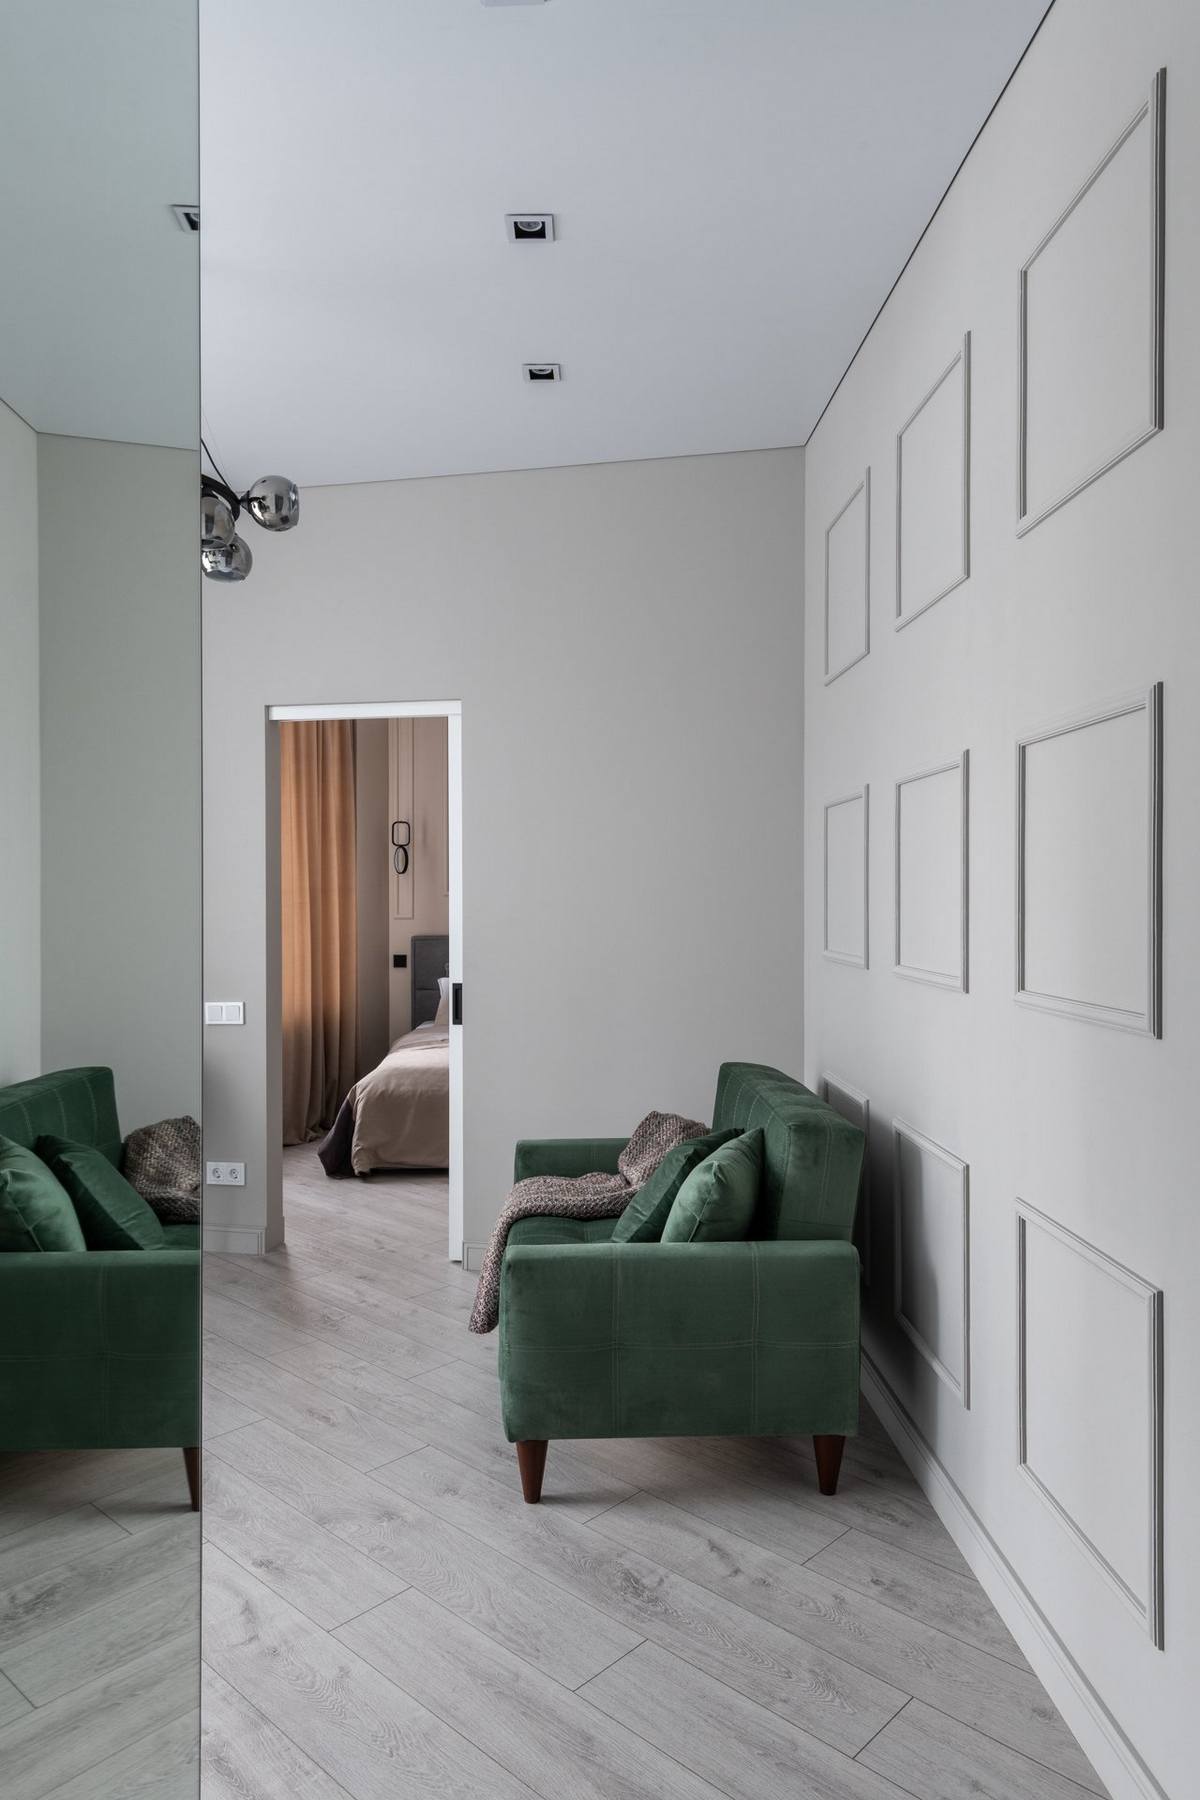 Một chiếc ghế sofa màu xanh ngọc lục bảo được bố trí sát tường, phía sau là phào chỉ hình vuông tối giản thay thế cho tranh treo tường quen thuộc.